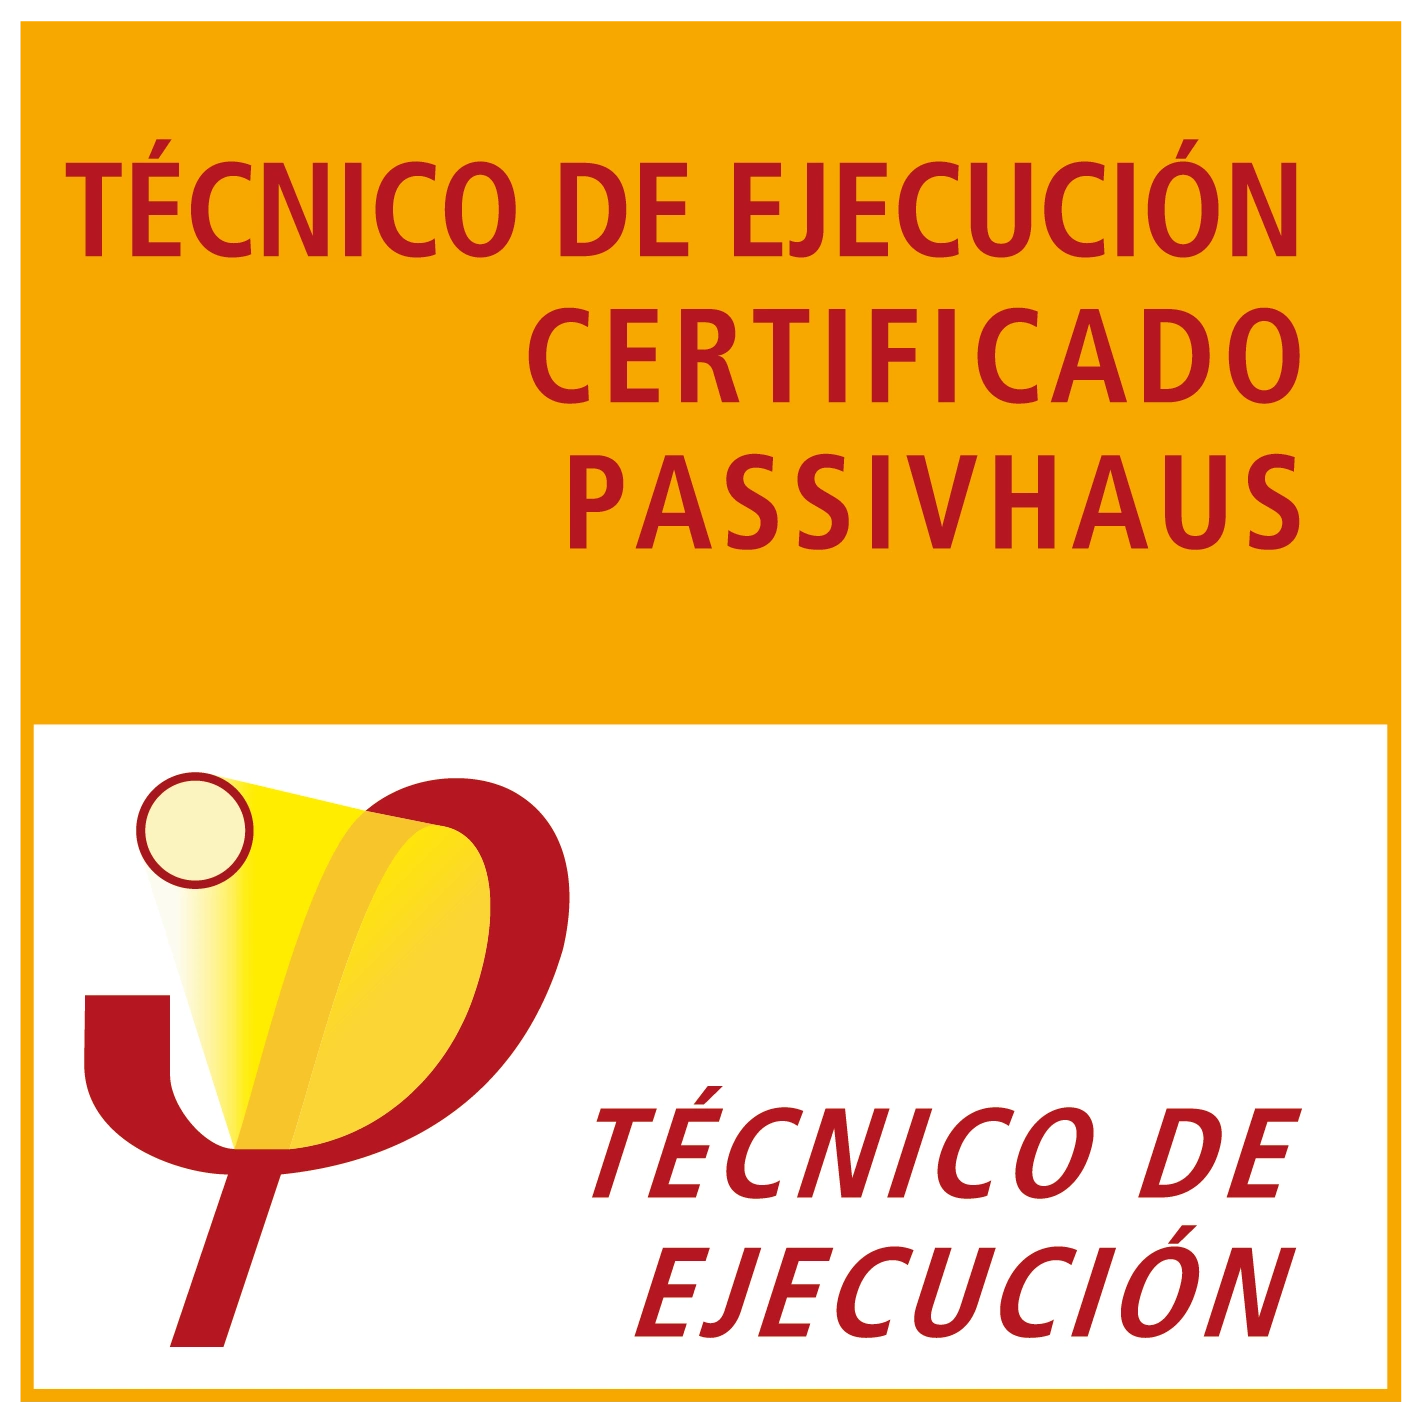 Técnico de ejecución certificado PassivHaus